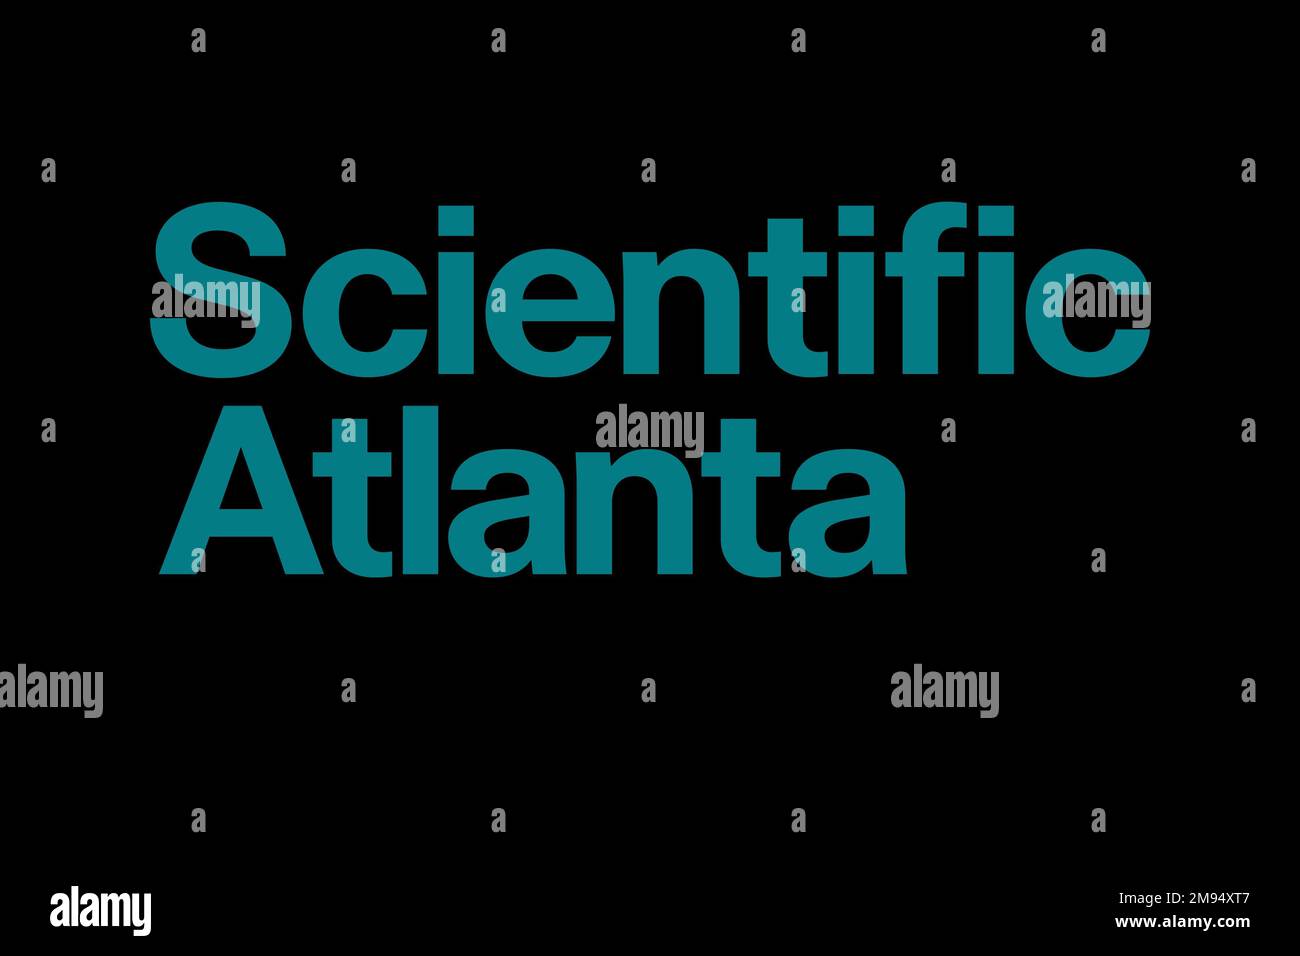 Scientific Atlanta, Logo, Black background Stock Photo